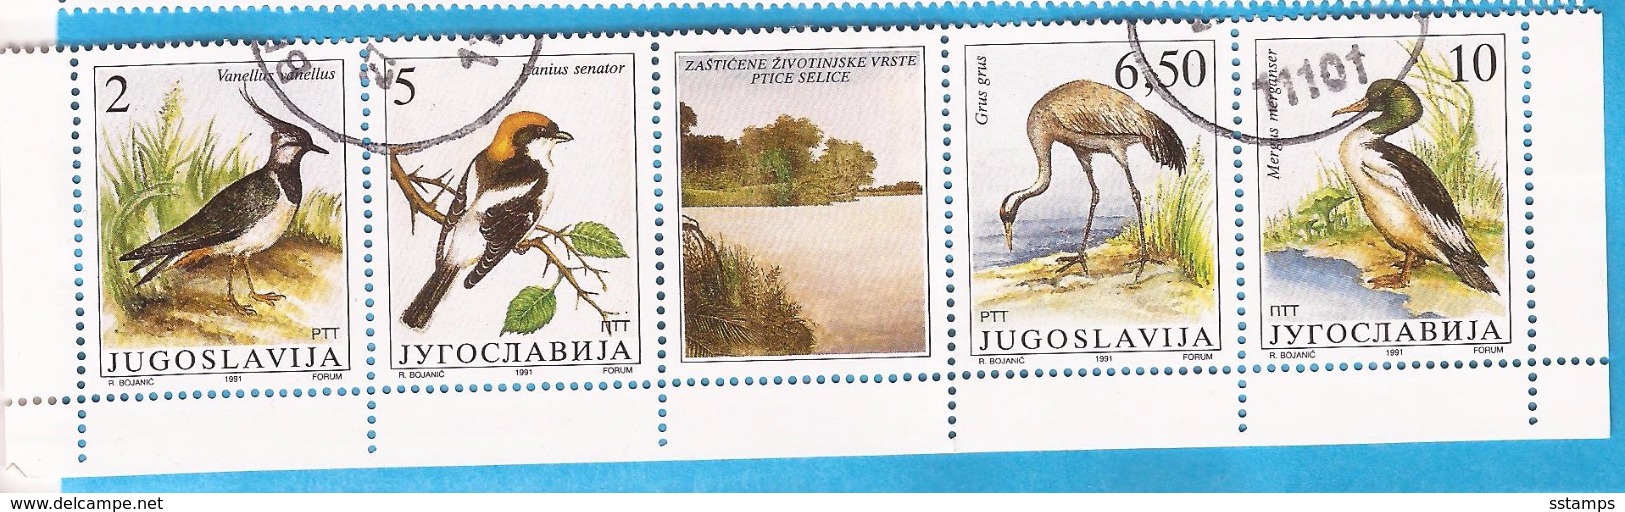 1991  246366  FAUNA WWF   JUGOSLAWIEN VOEGEL  BIRDS  GESCHUEZTE TIERE  USED - Used Stamps